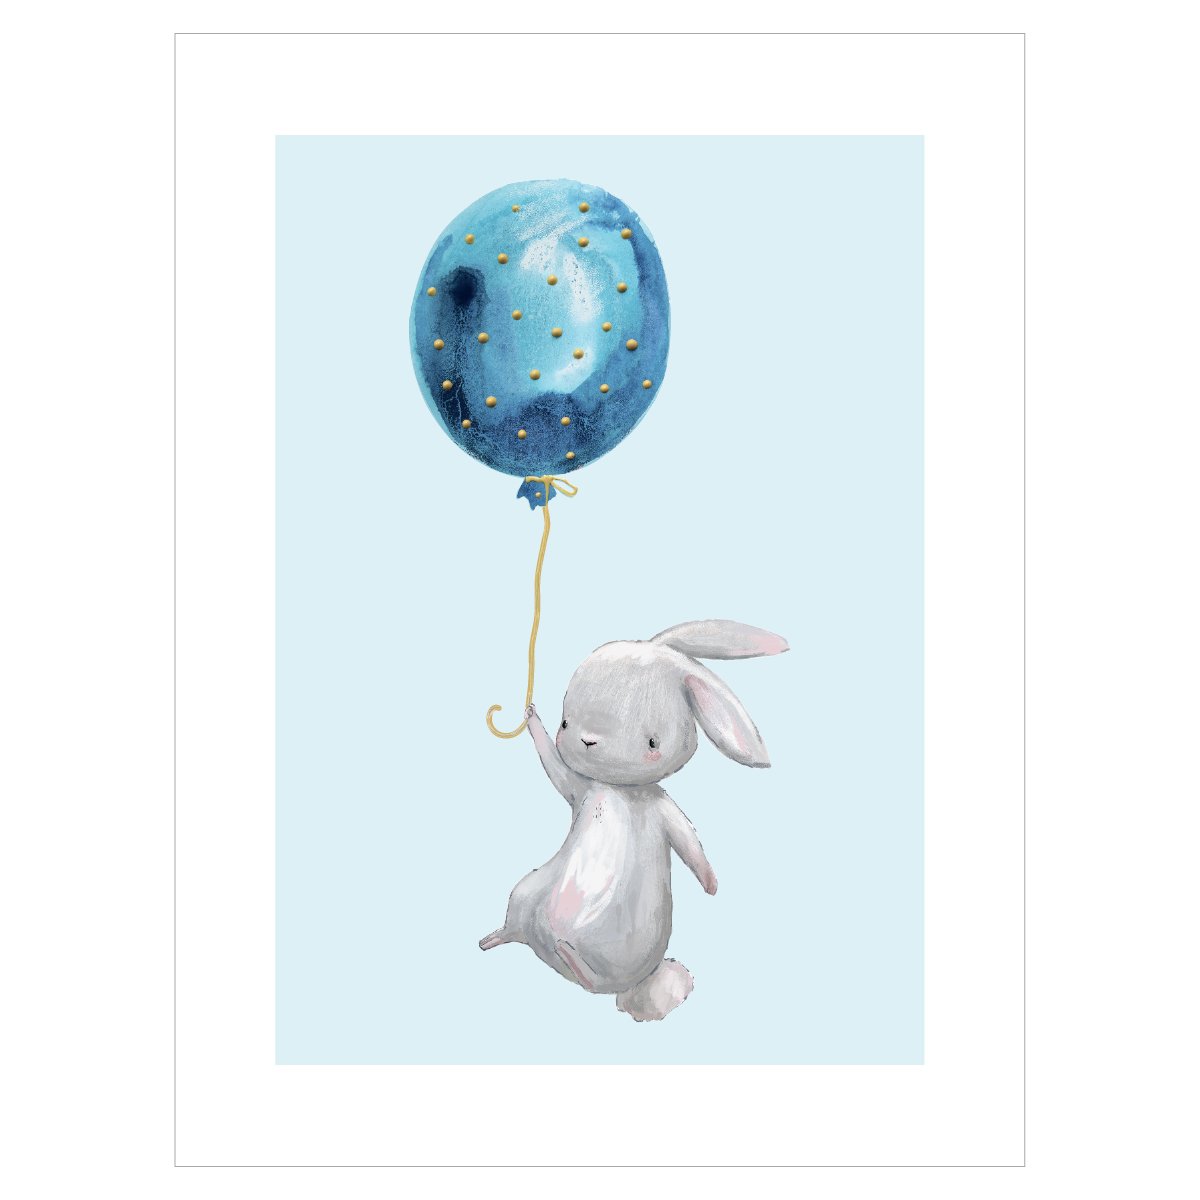 Plakat z królikiem lecącym z niebieskim balonem do pokoju dziecięcego#kolor_niebieski